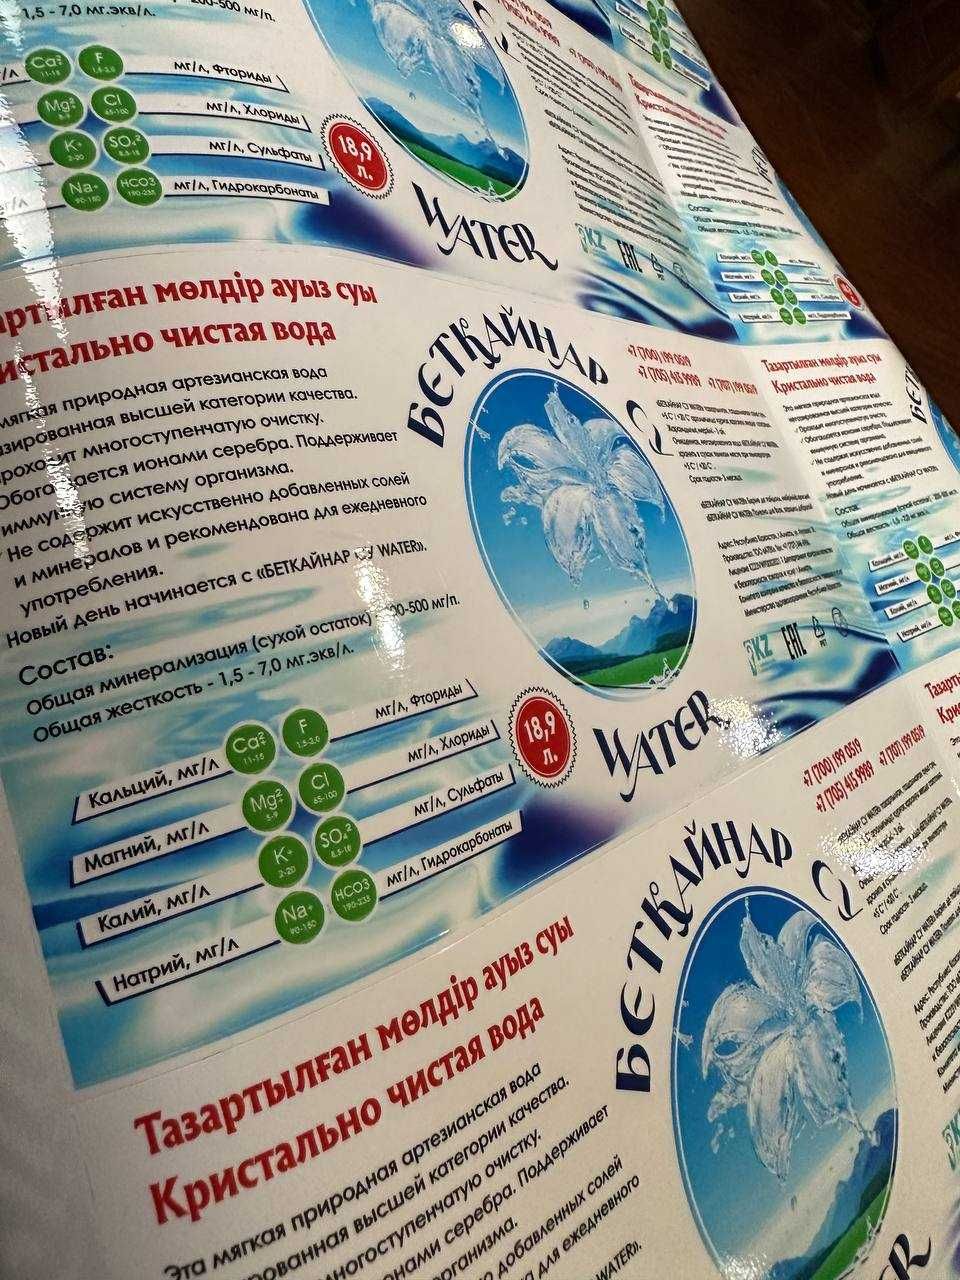 Наклейки для Фреш маркет, продажа питьевой воды